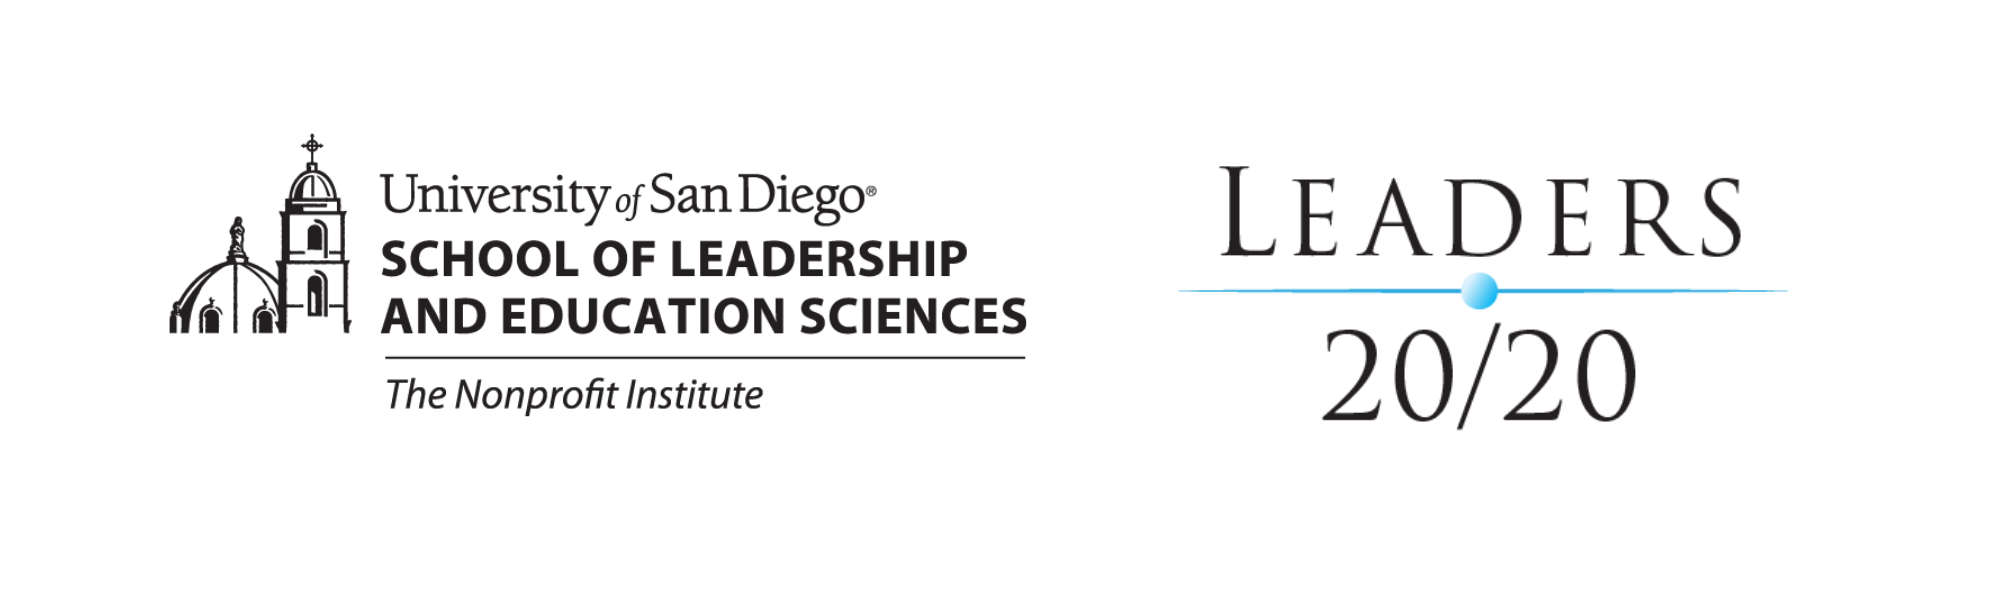 University of San Diego SOLES Membership Leaders 2020